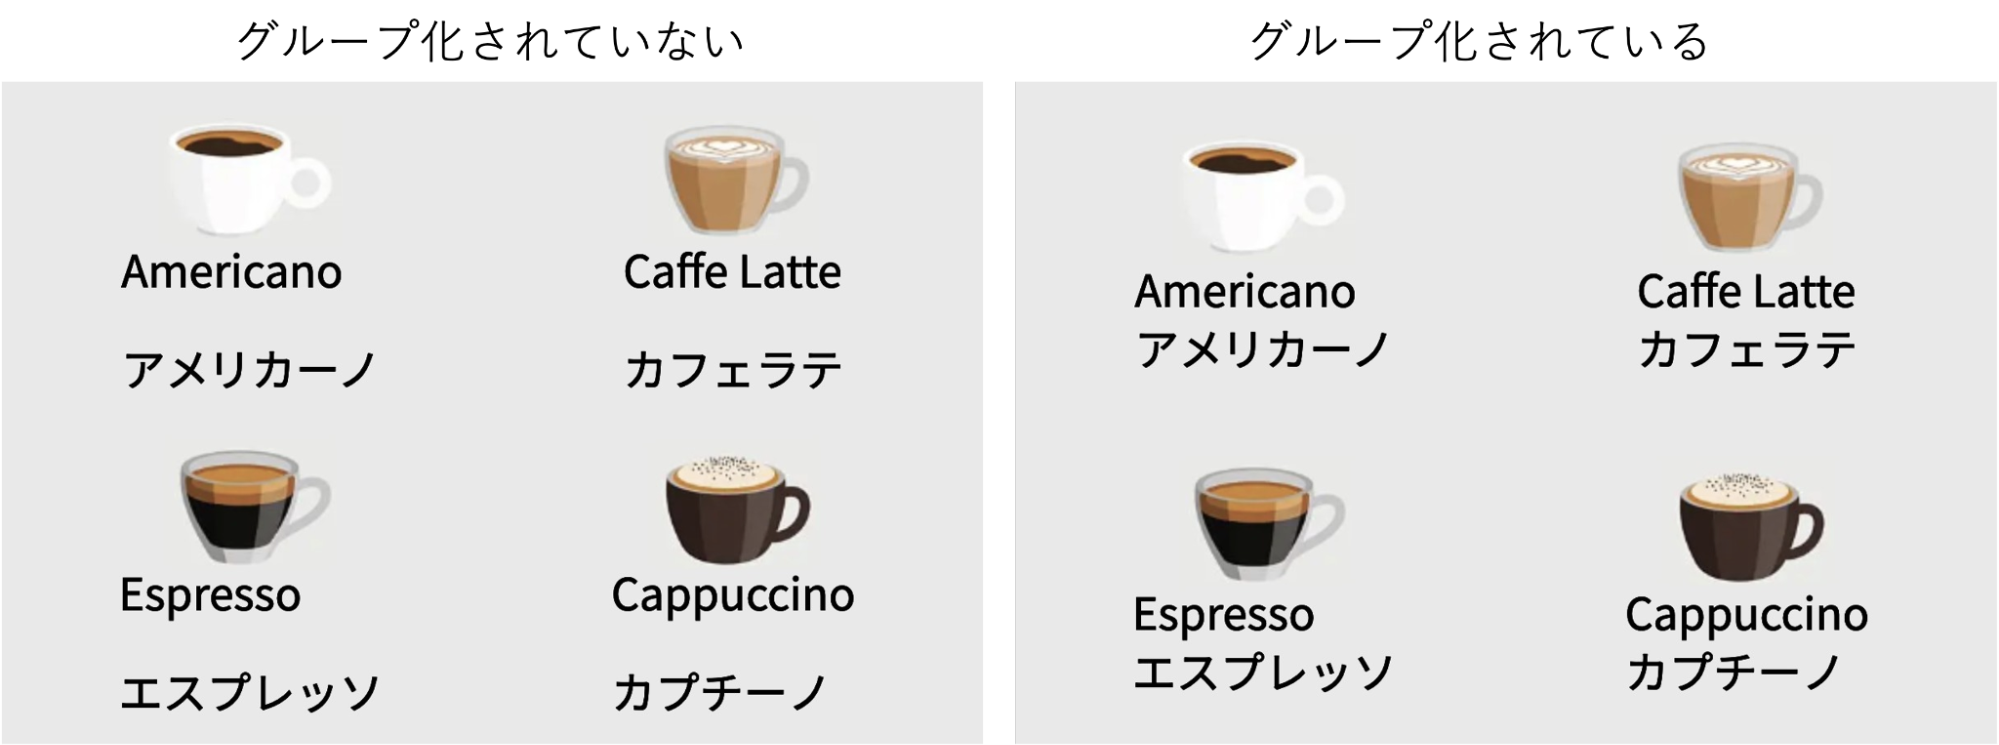 グループ化されている、されていないコーヒーの画面